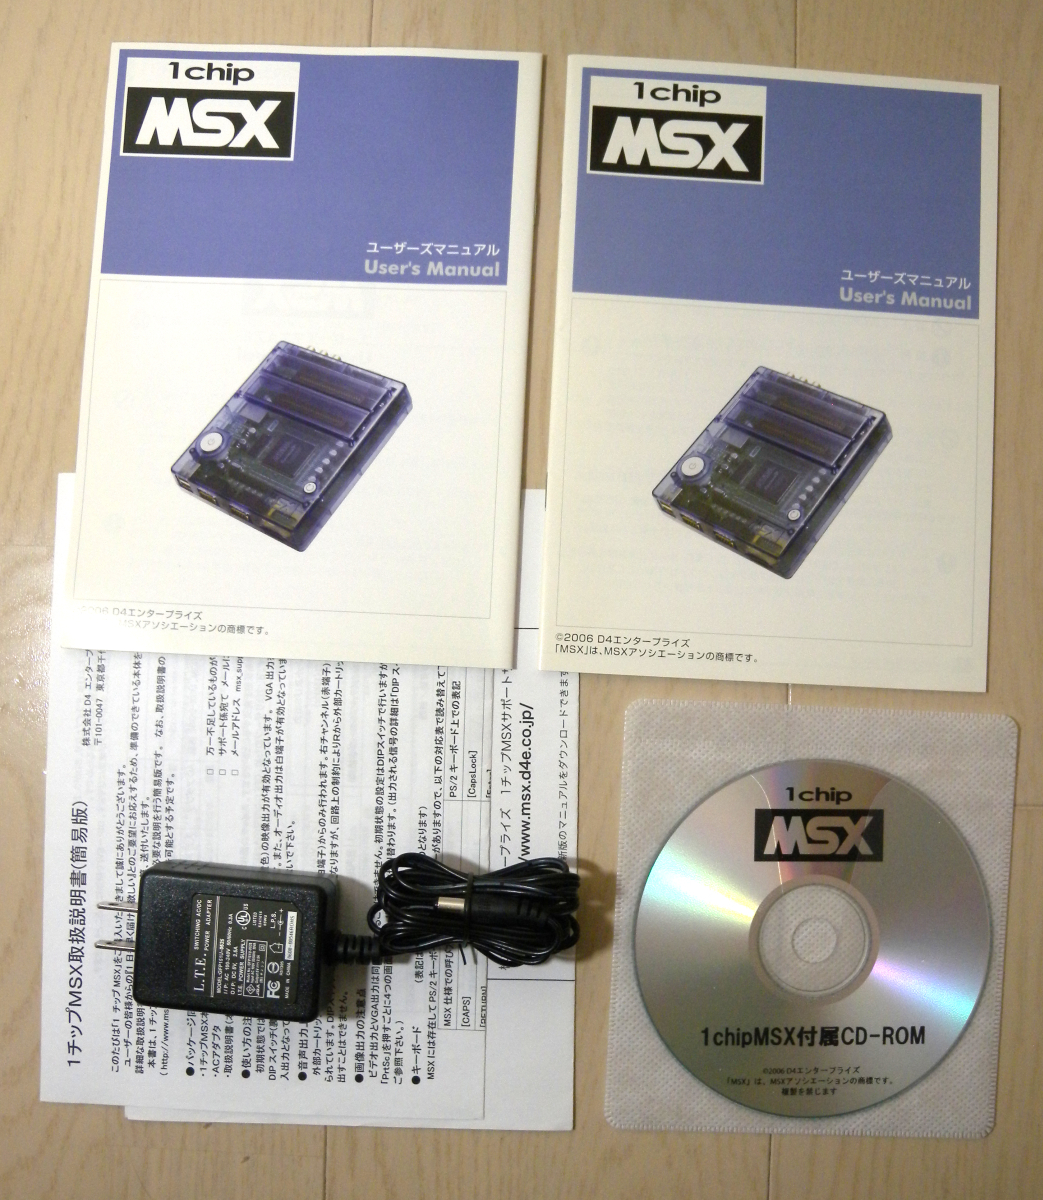 1chip MSX（１チップMSX）付属品完備 動作確認済 新品同様 _旧版と改訂版の説明書があります